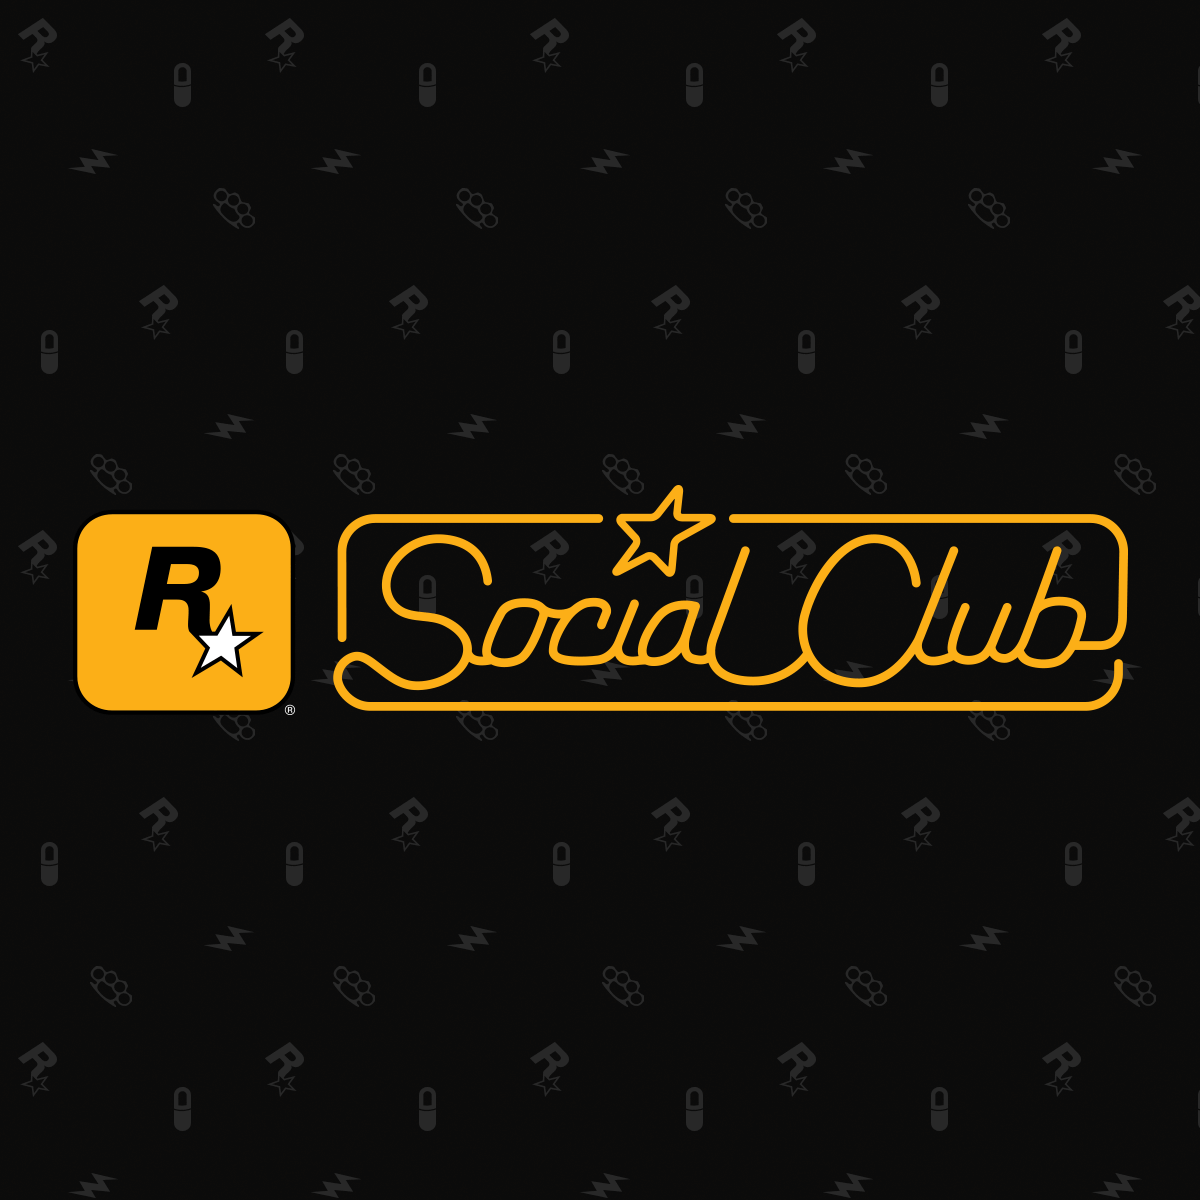 Гта 5 сошл клаб. Social Club. Рокстар социал клаб. Social Club игры. Social Club логотип.